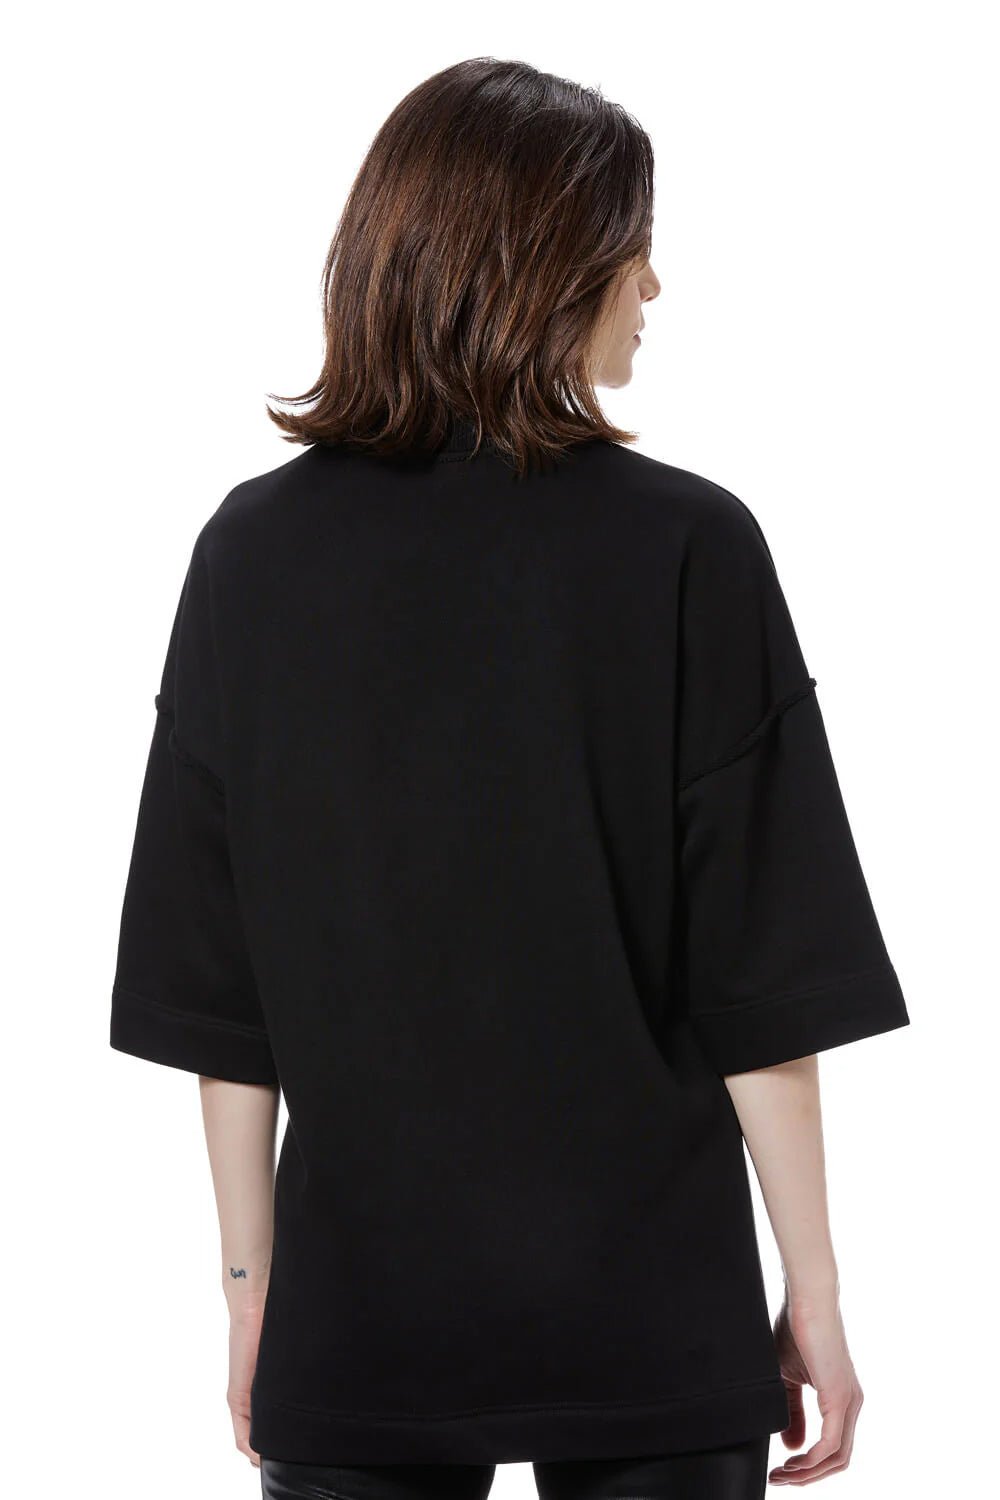 Tricou damă, negru, brodat Westside, bumbac premium, croială oversized, detalii elegante (guler rotund, umăr căzut).